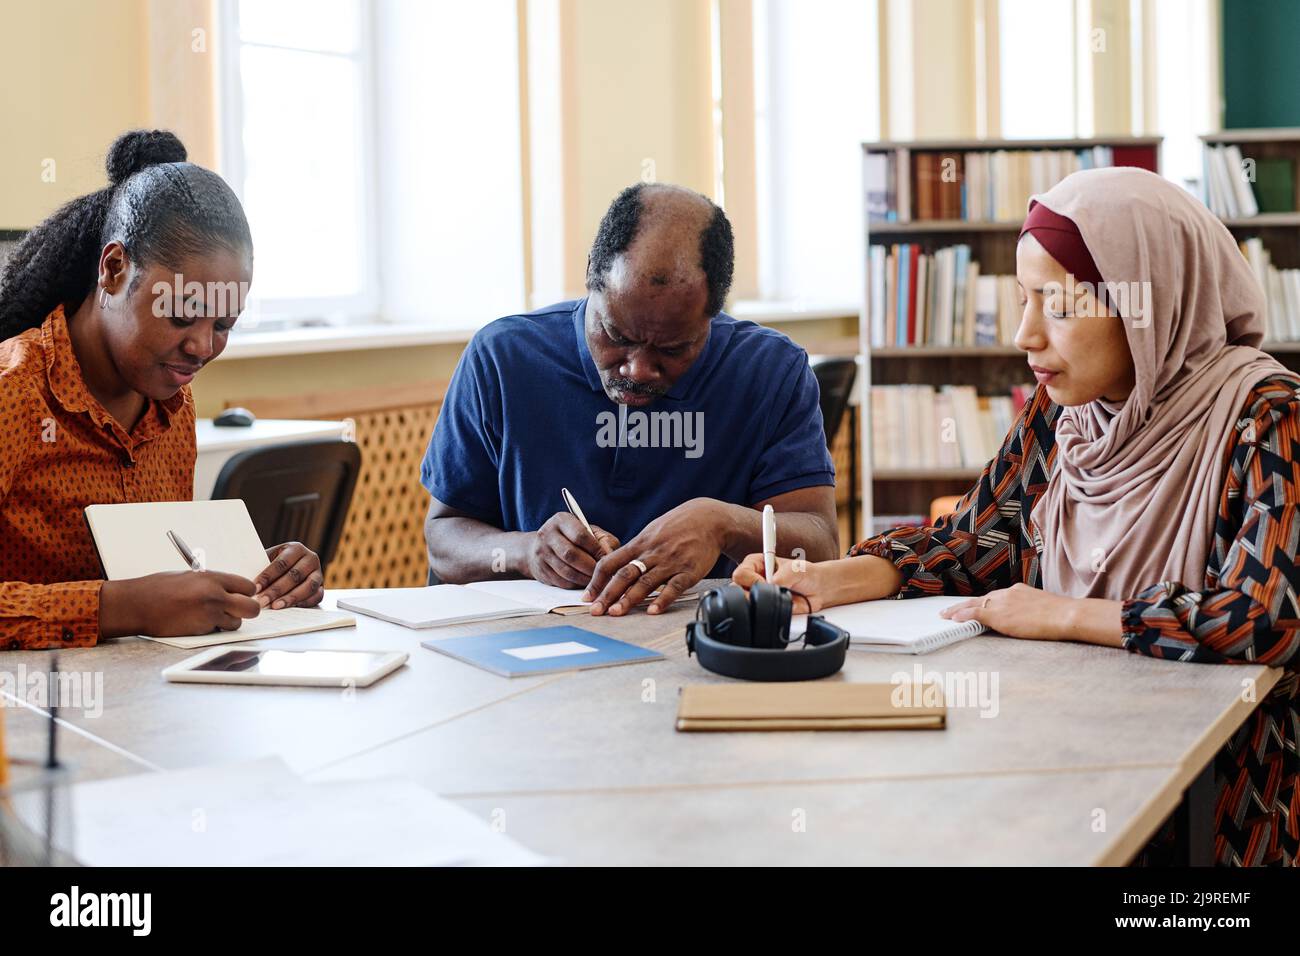 Gruppo di tre studenti immigrati multietnici seduti a tavola in biblioteca che svolgono un compito di scrittura durante la lezione Foto Stock